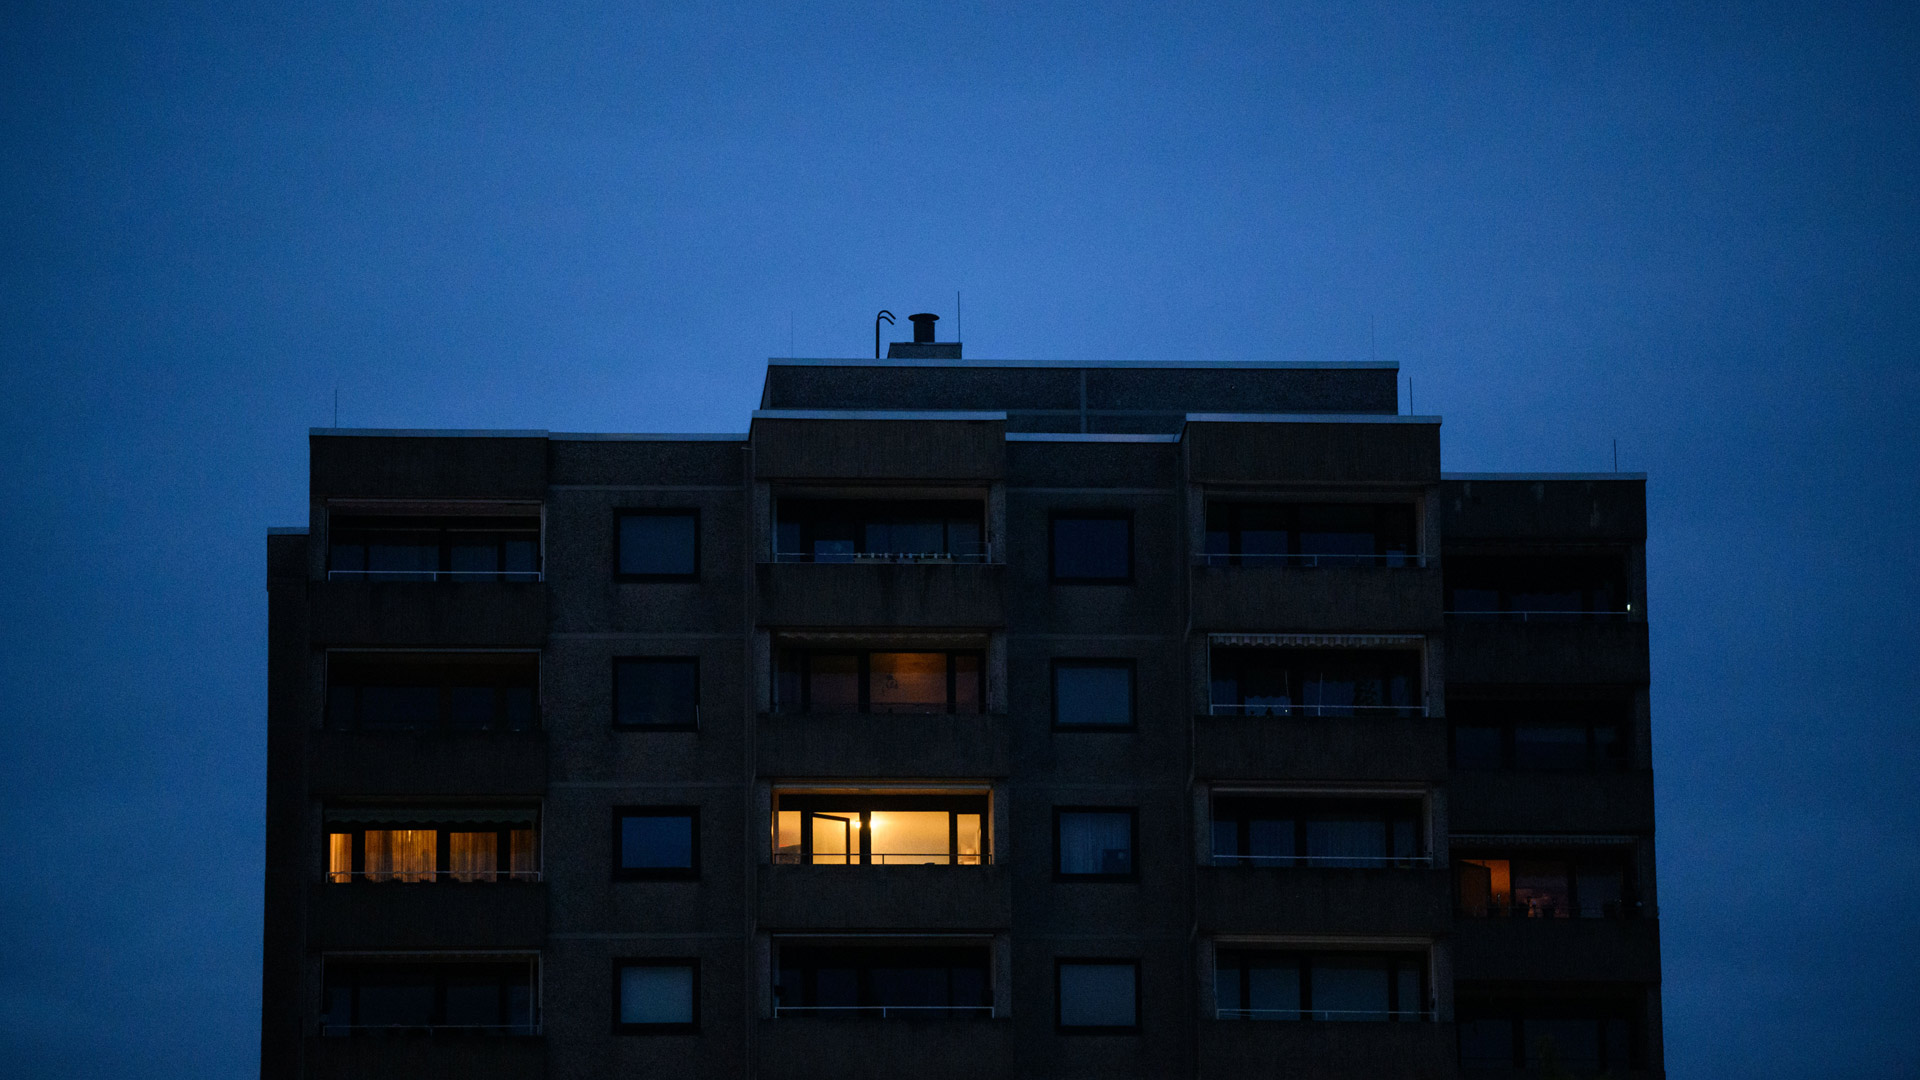 Nur in einzelnen Wohnungen eines Mehrfamilienhauses brennt am frühen Morgen Licht. | picture alliance/dpa